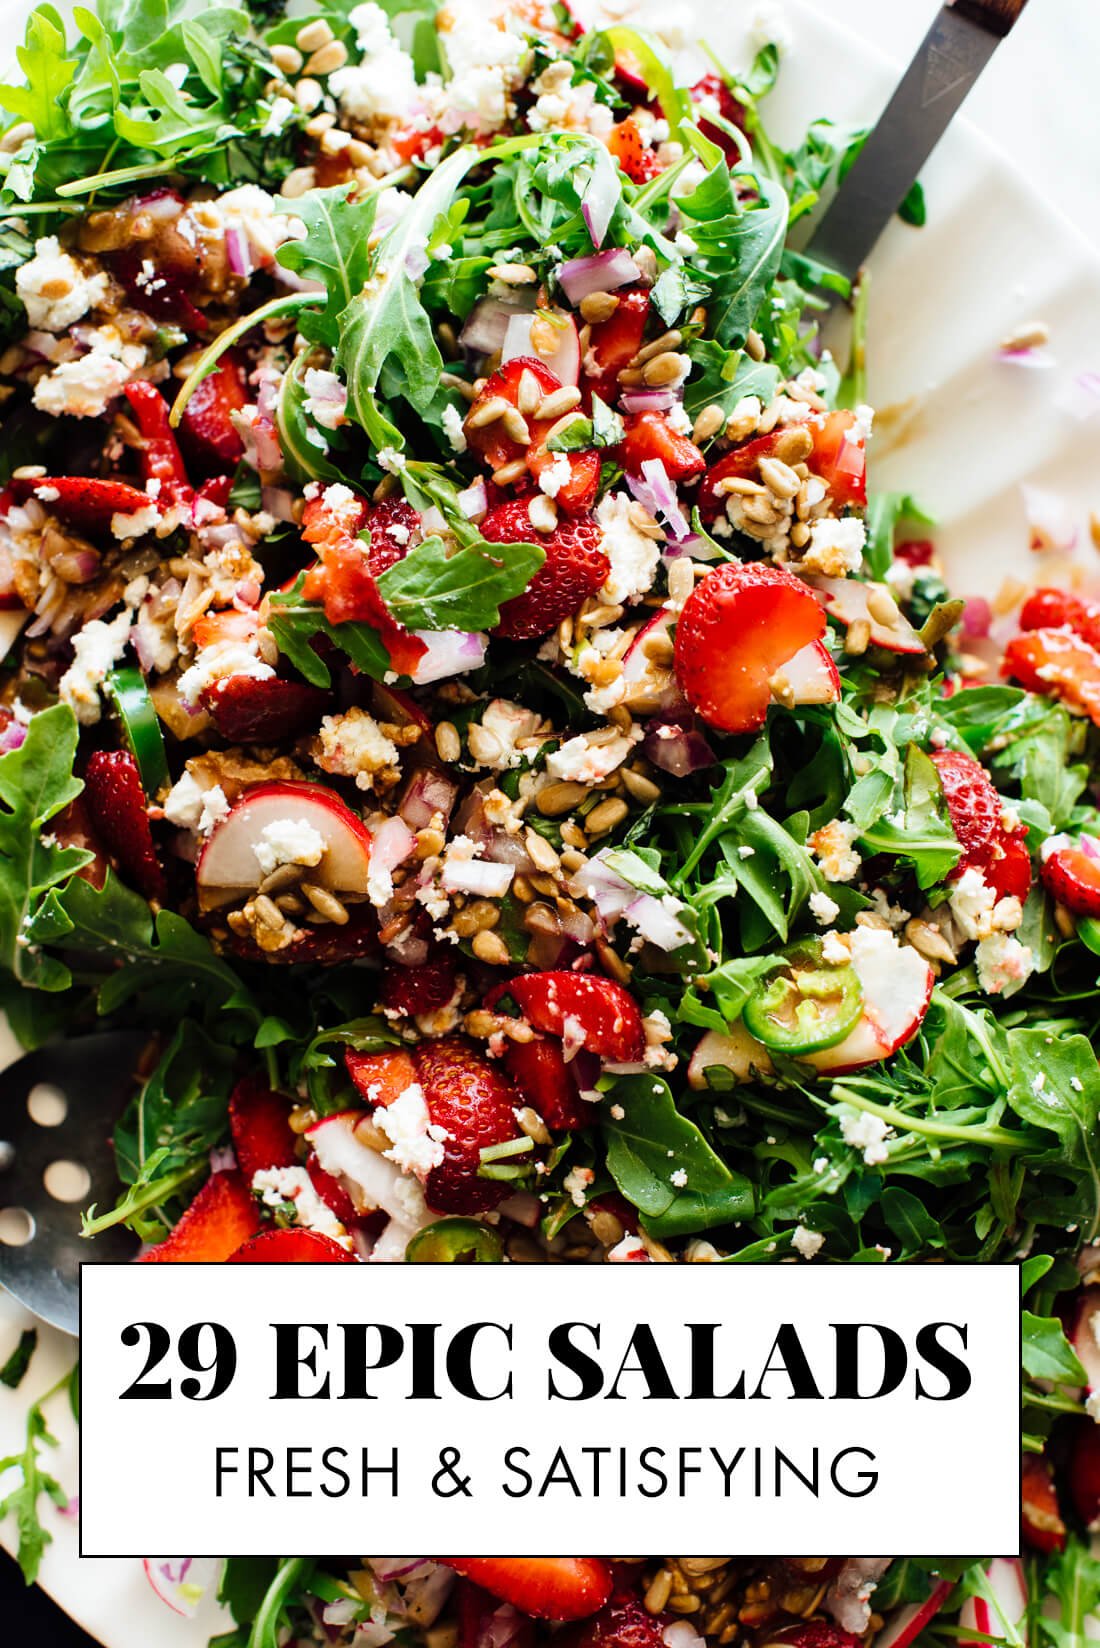 29 epic salad recipes